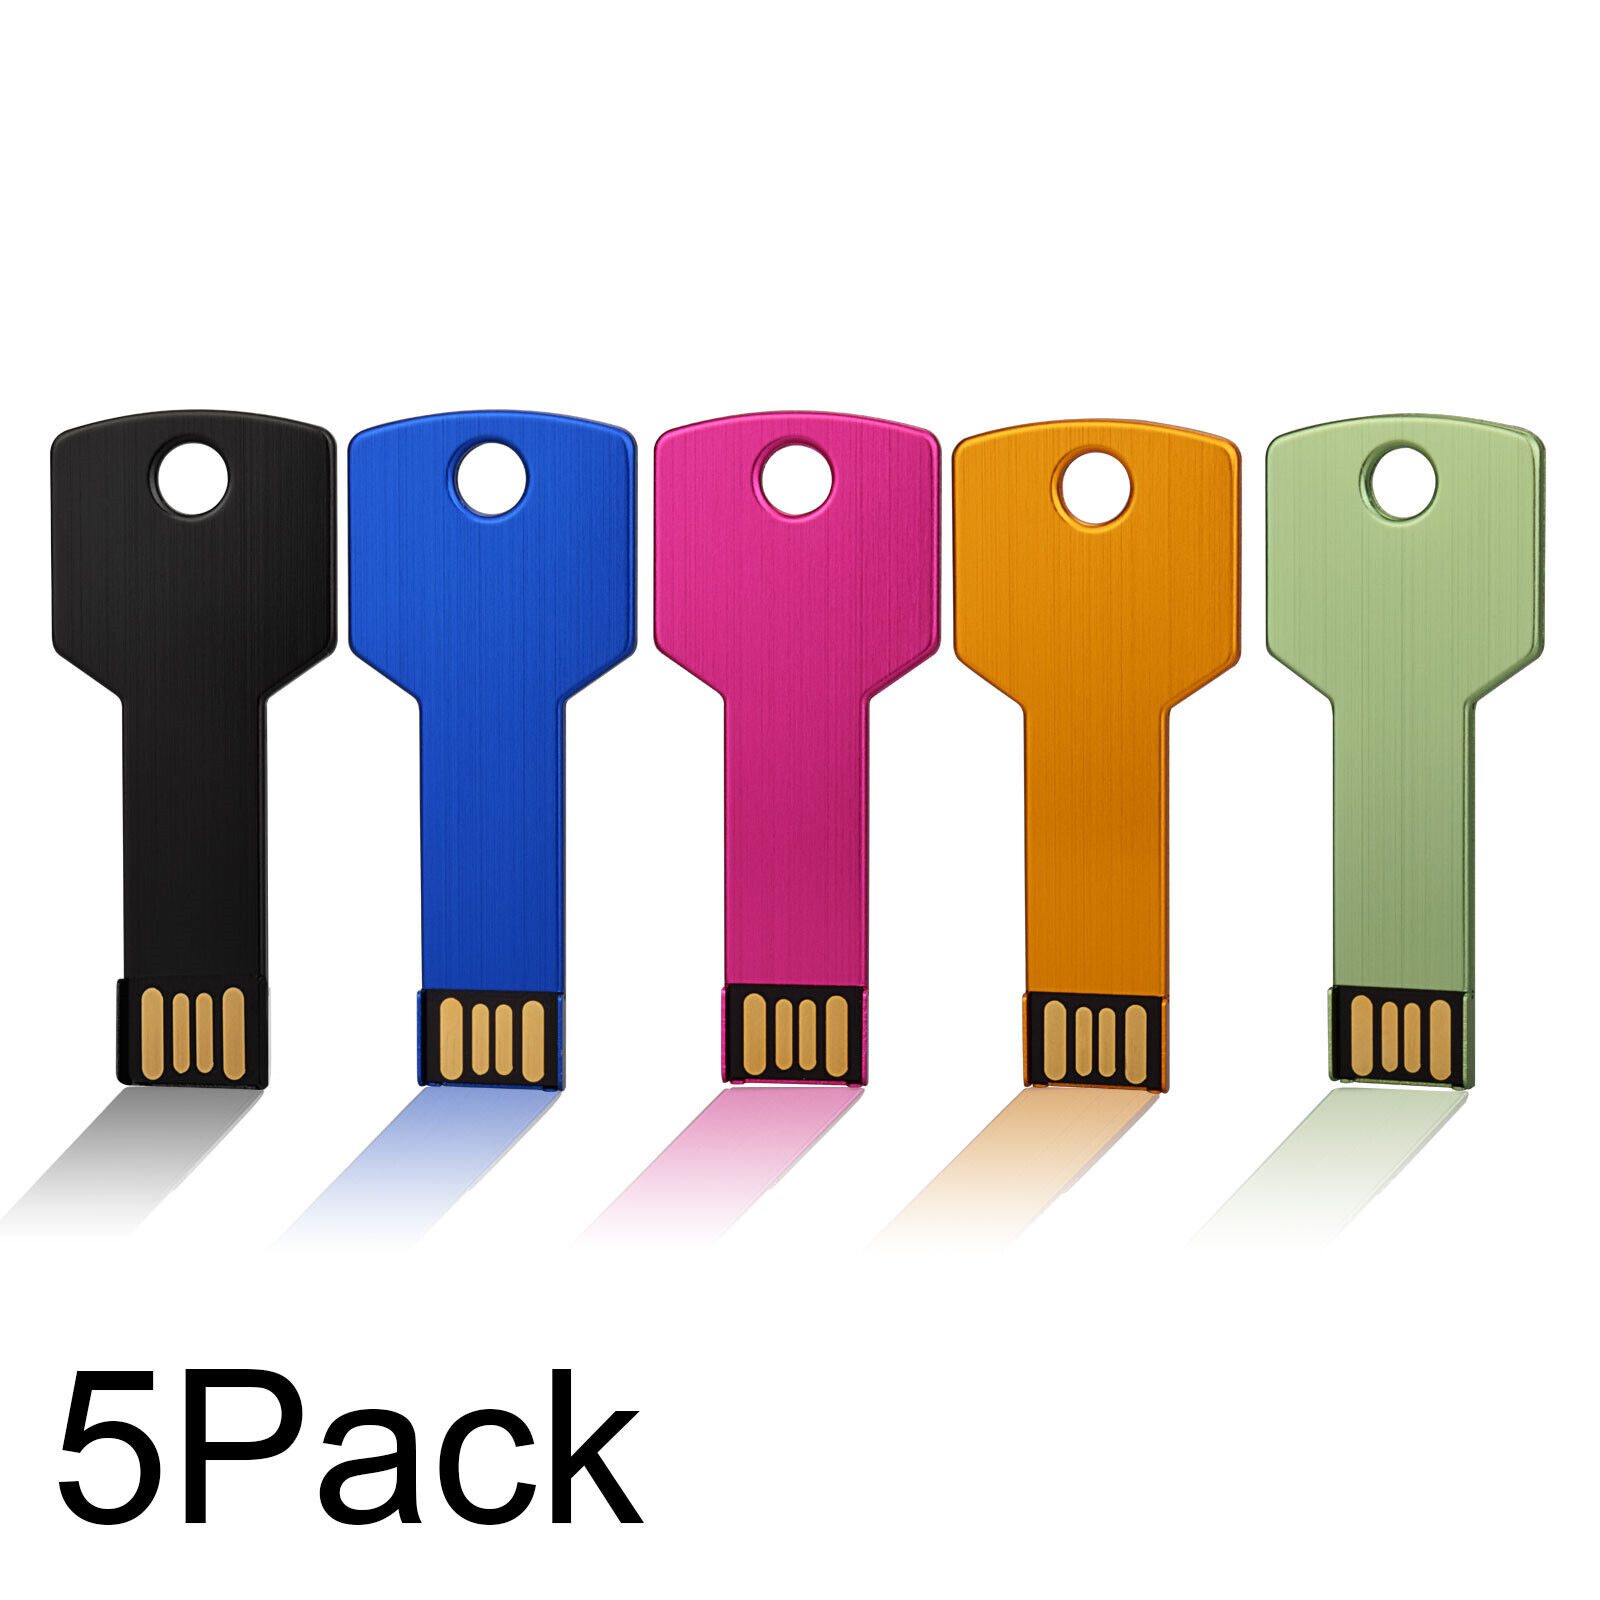 2/4/8/16/32GB USB 2.0 Key Flash Drive Thumb Drive Storage U Disk Memory PenStick